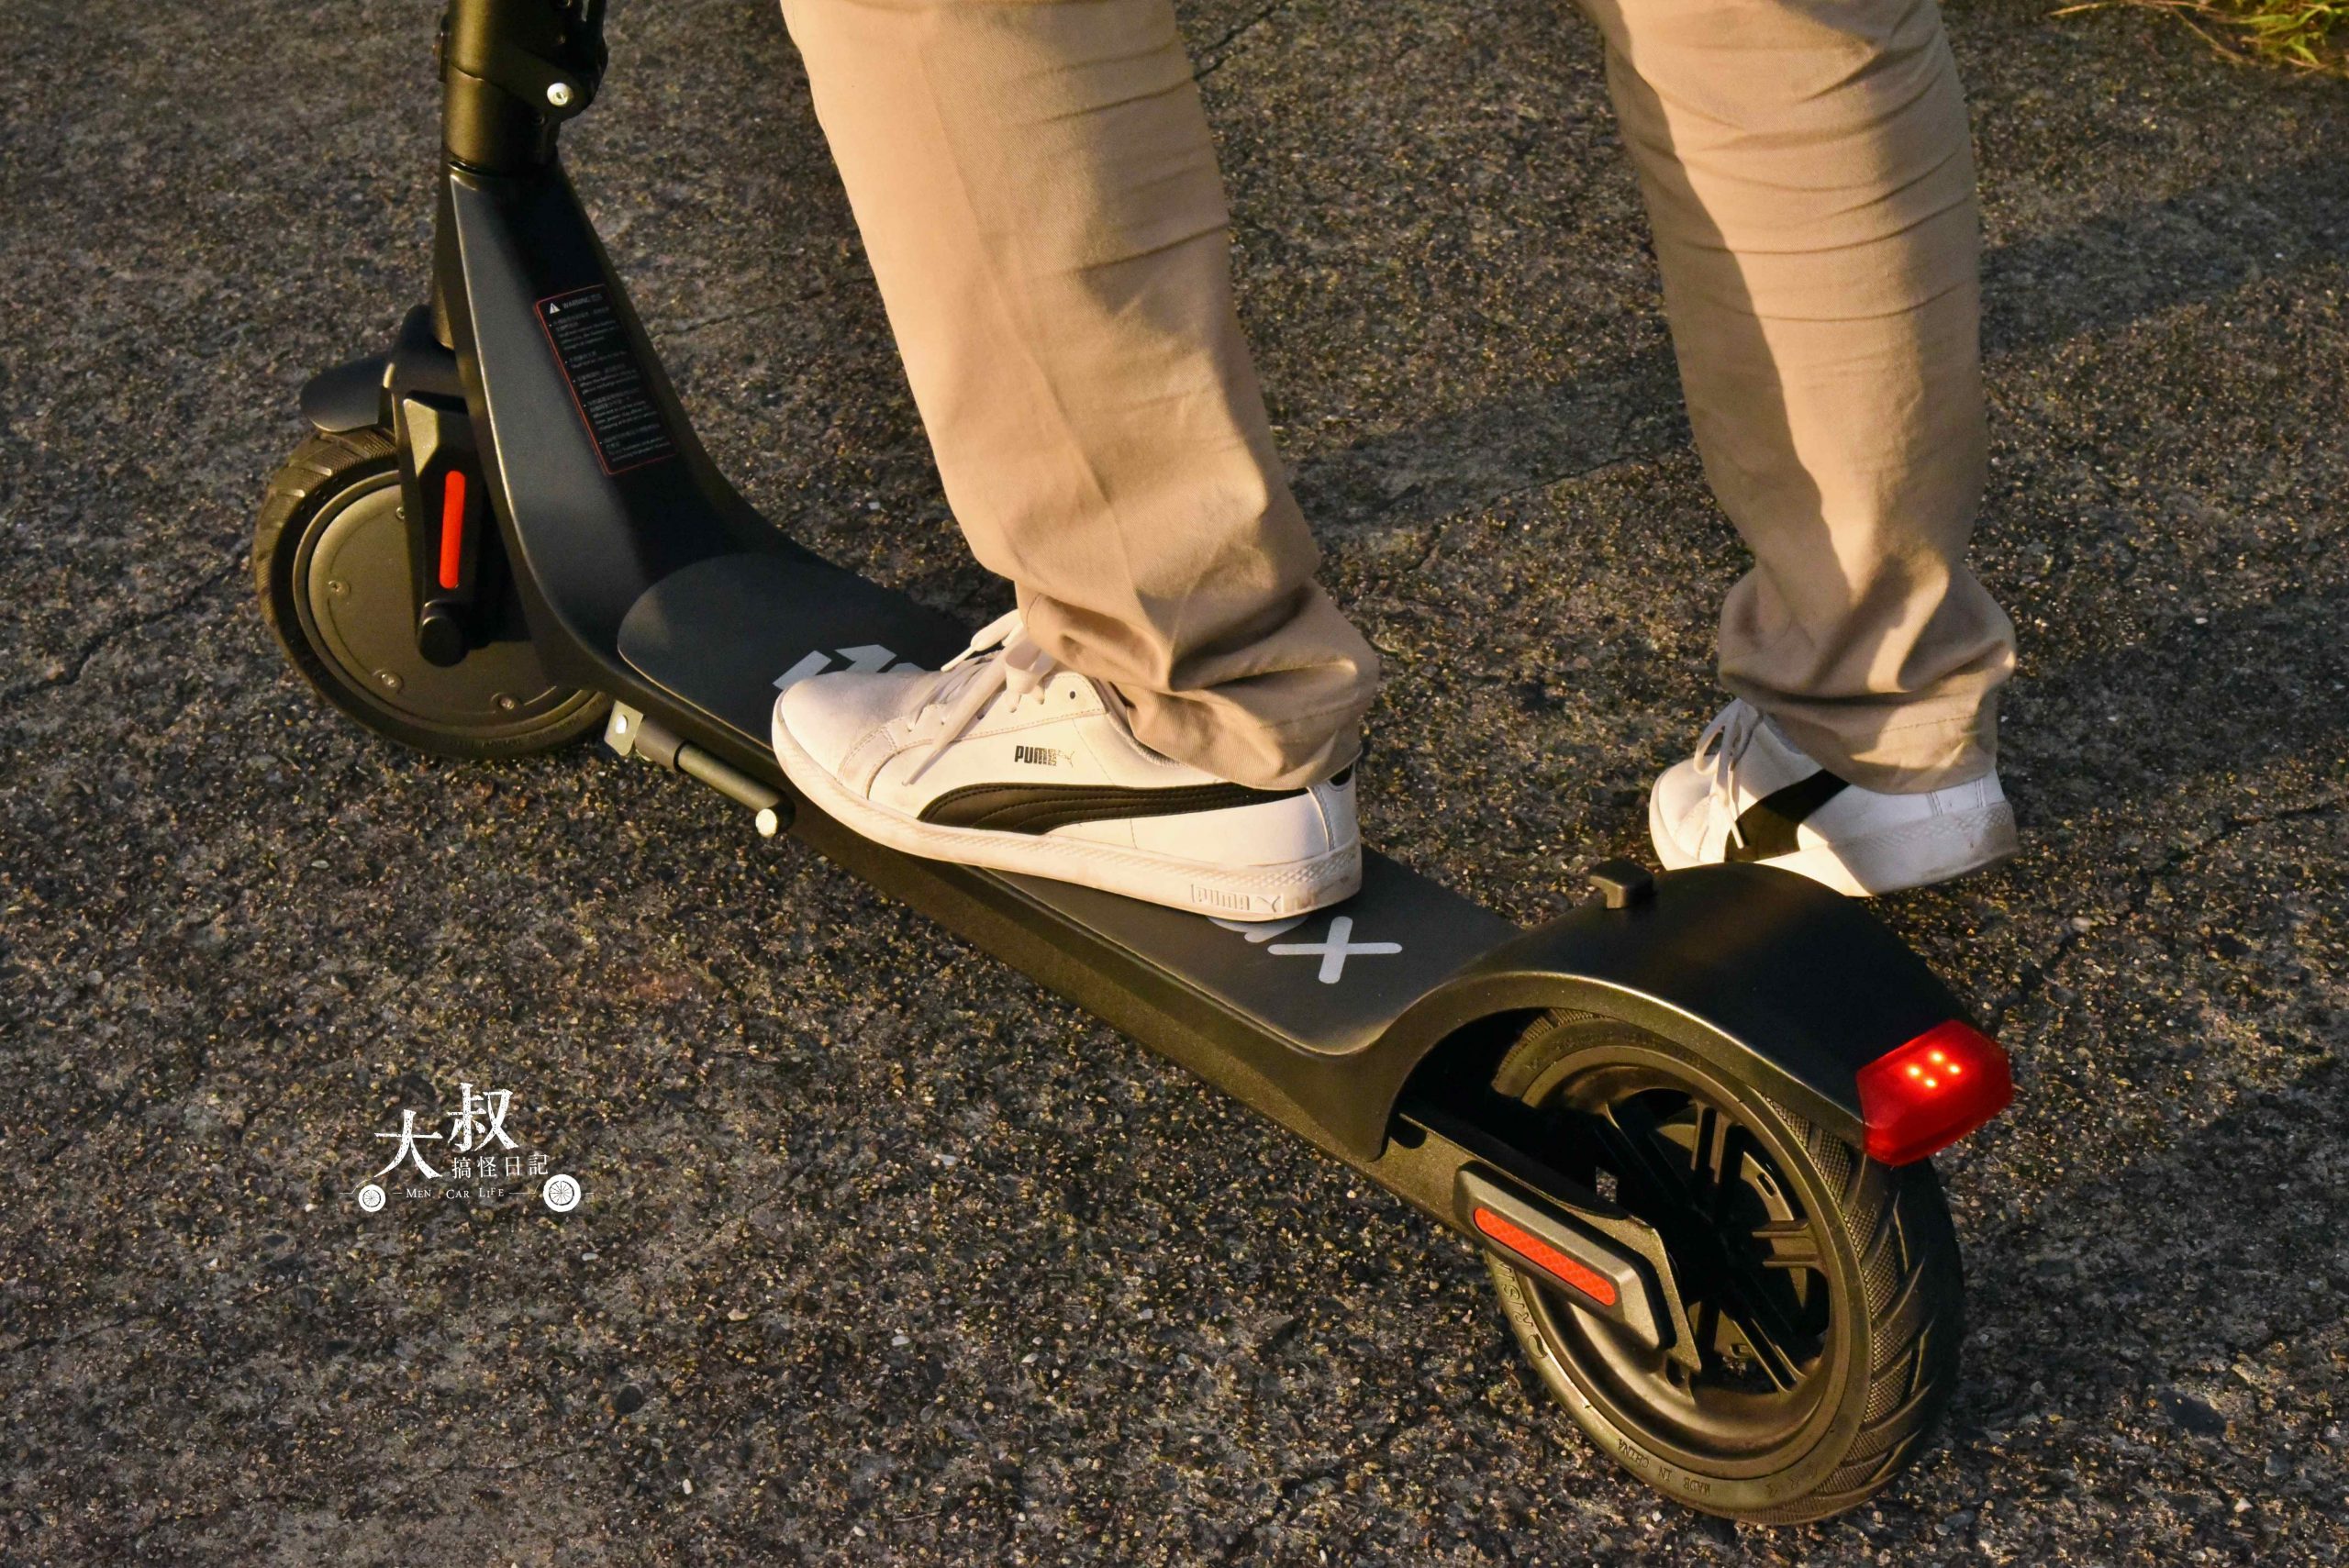 電動滑板車｜Waymax X7 尊雅電動滑板車開箱分享・代步新選擇・出外樂趣多